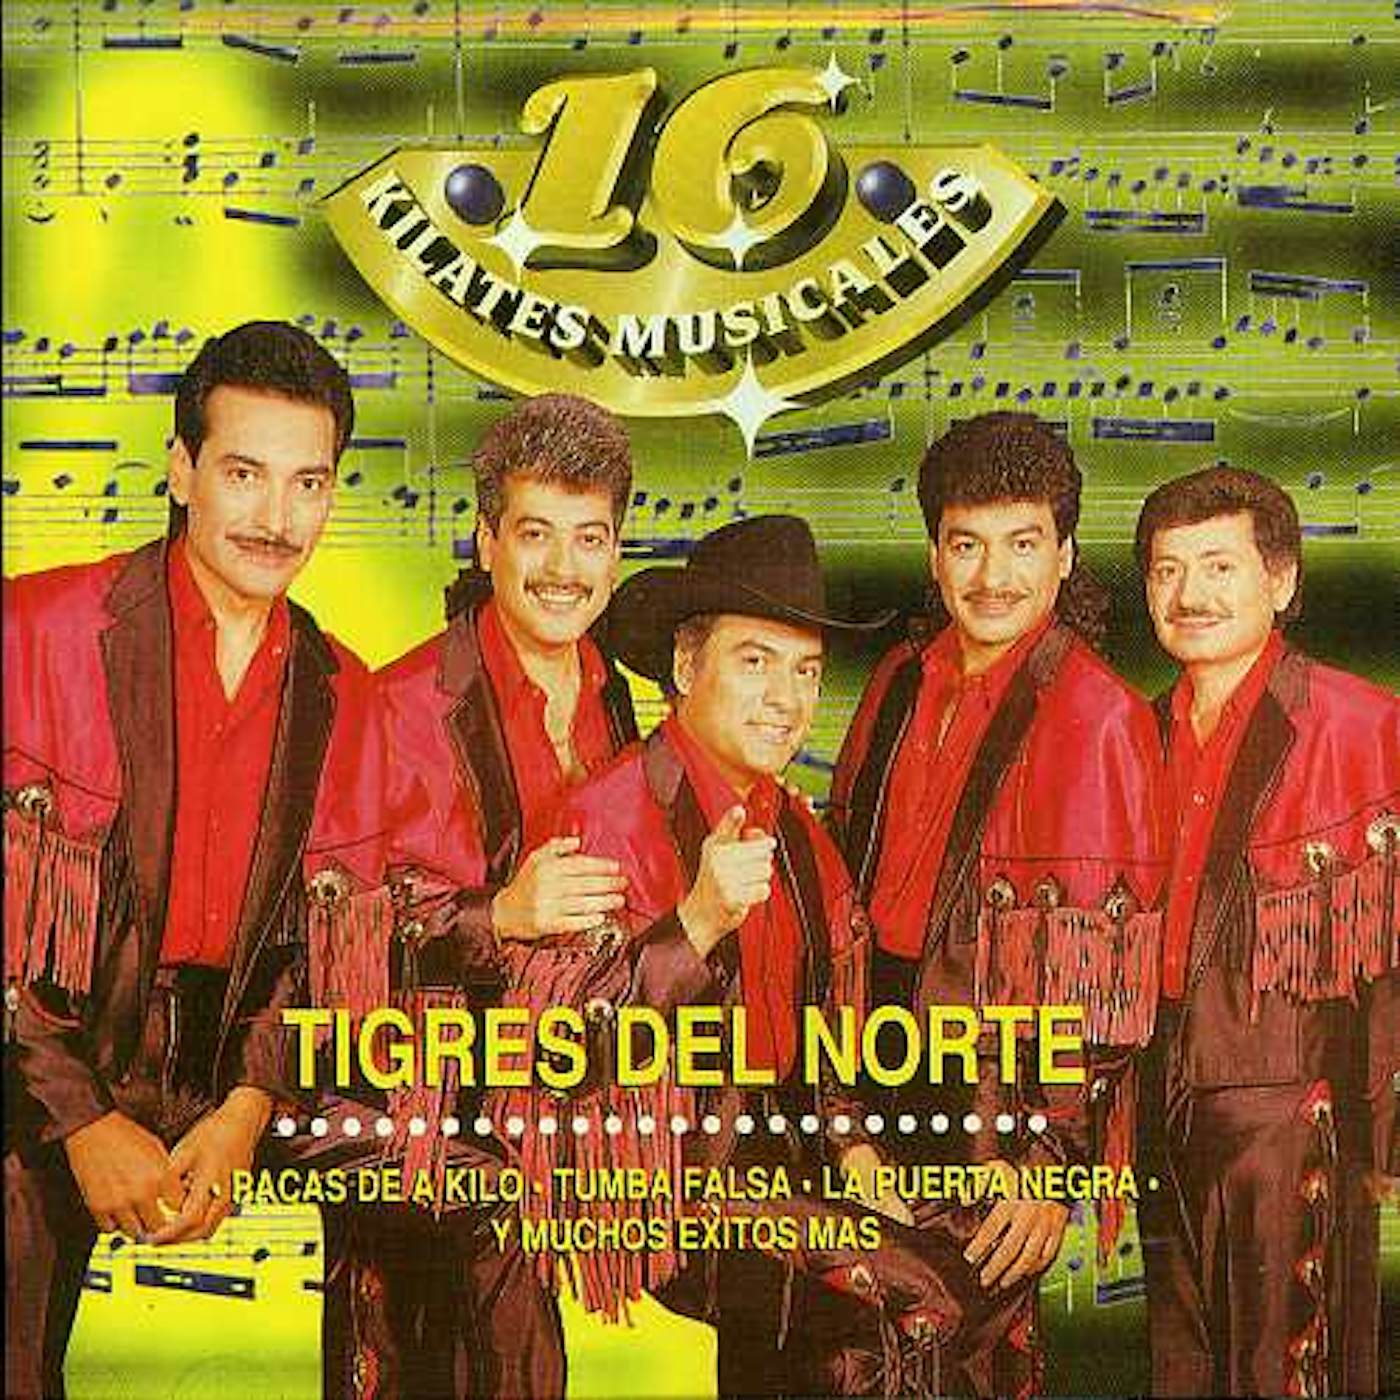 Los Tigres Del Norte 16 KILATES MUSICALES CD